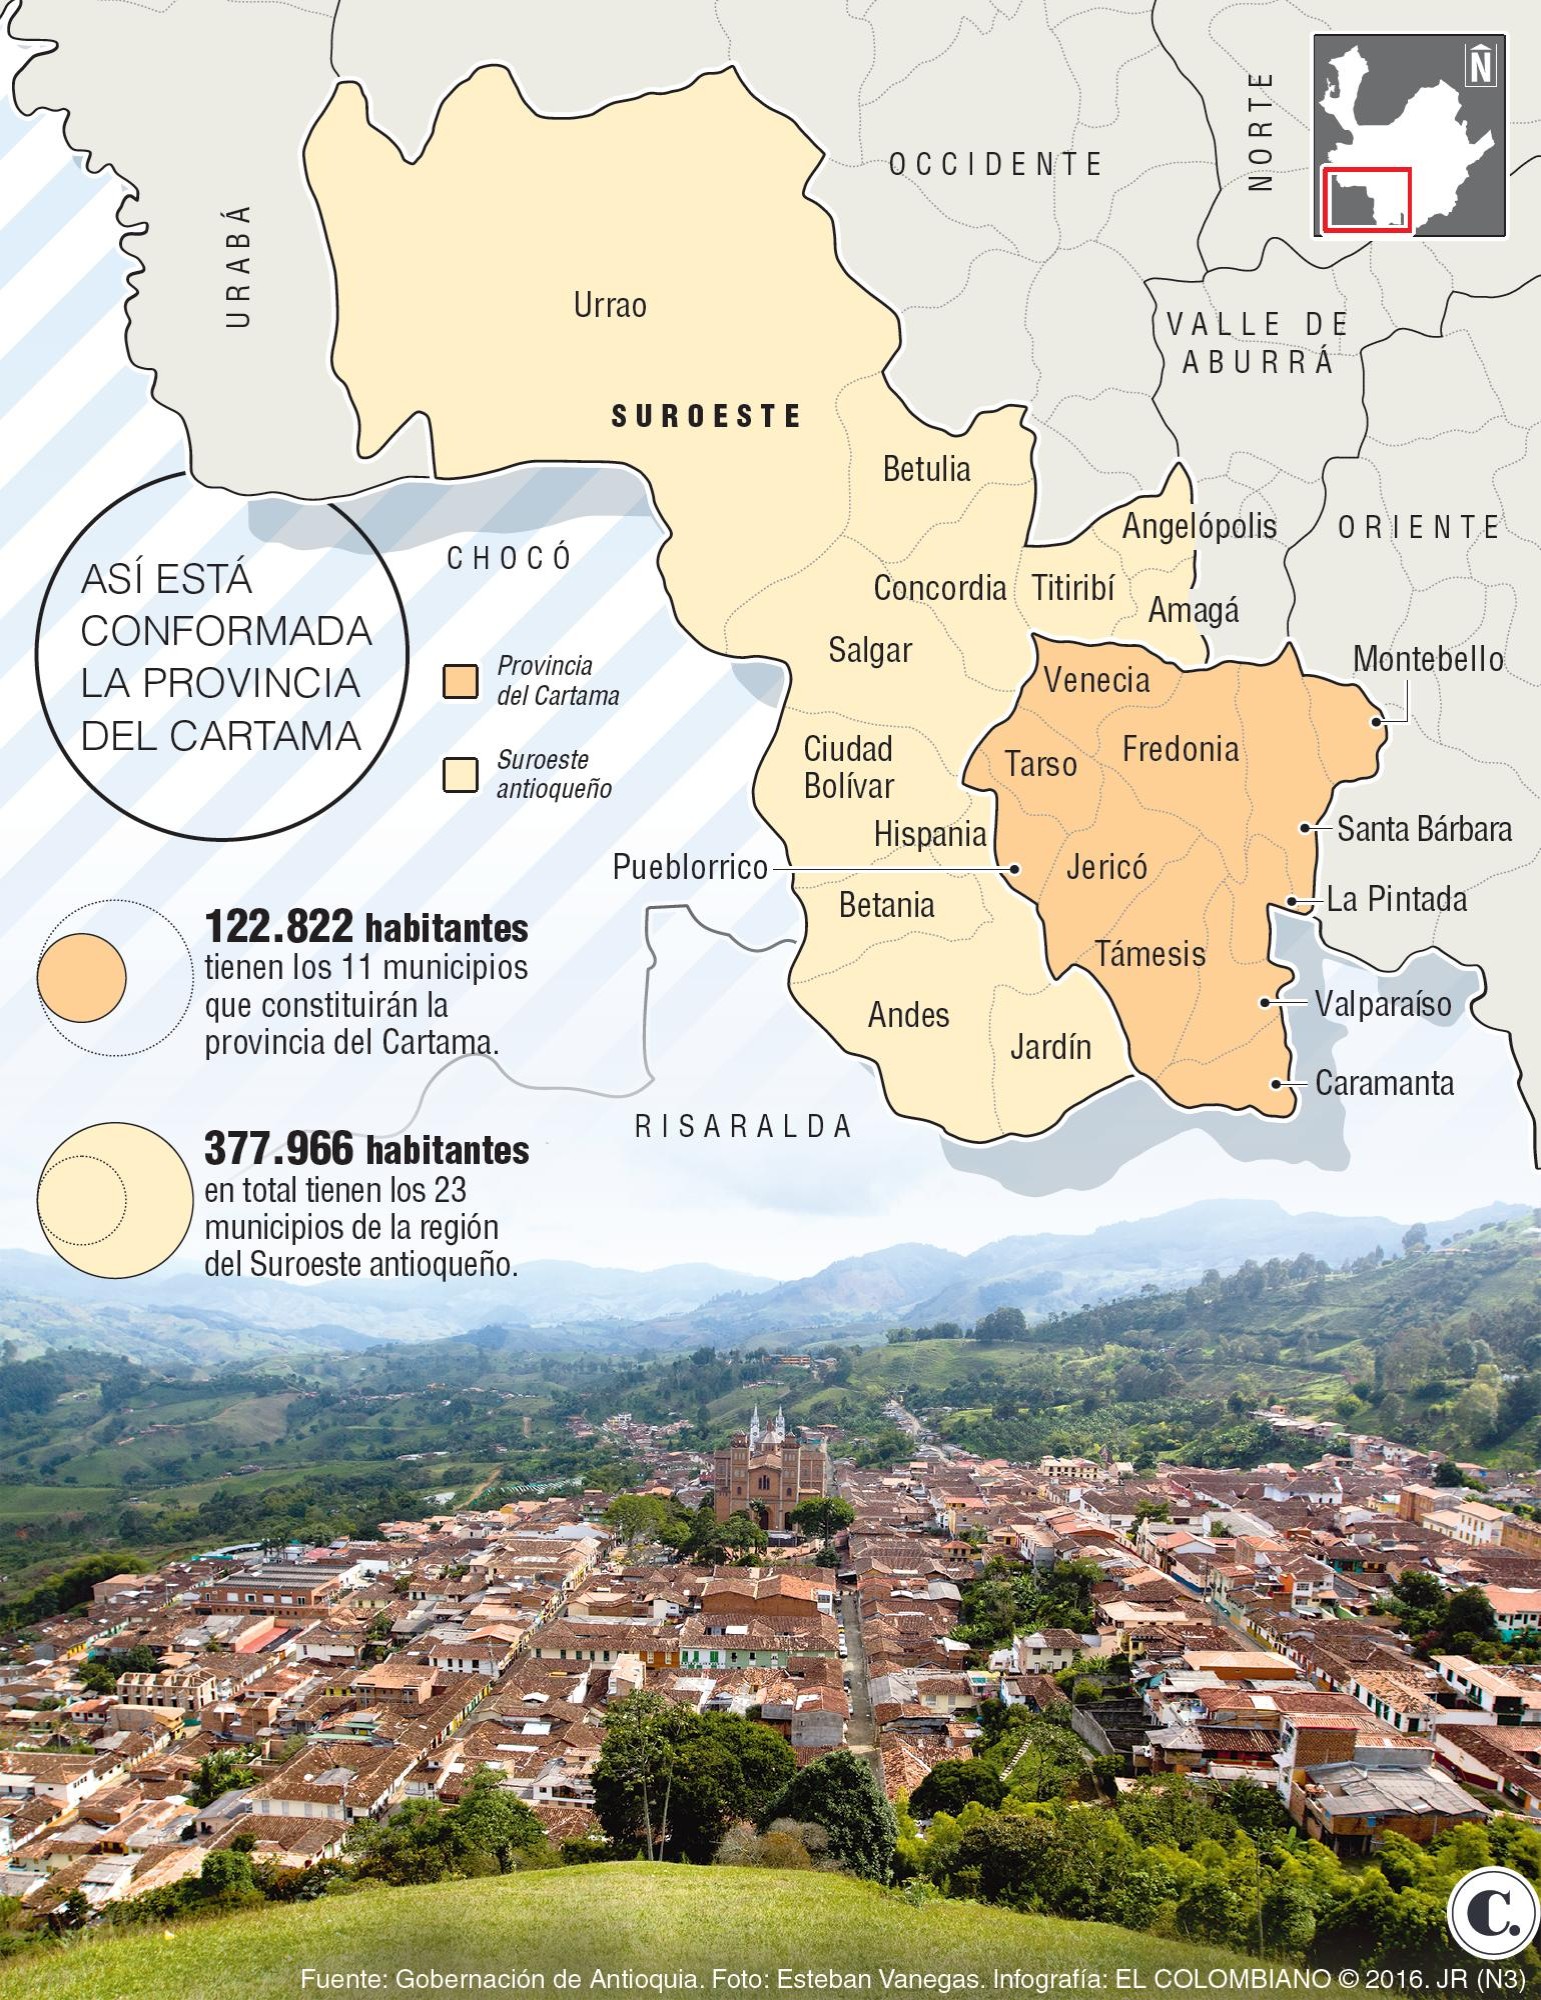 Asamblea de Antioquia dará trámite a la creación de la provincia de Cartama